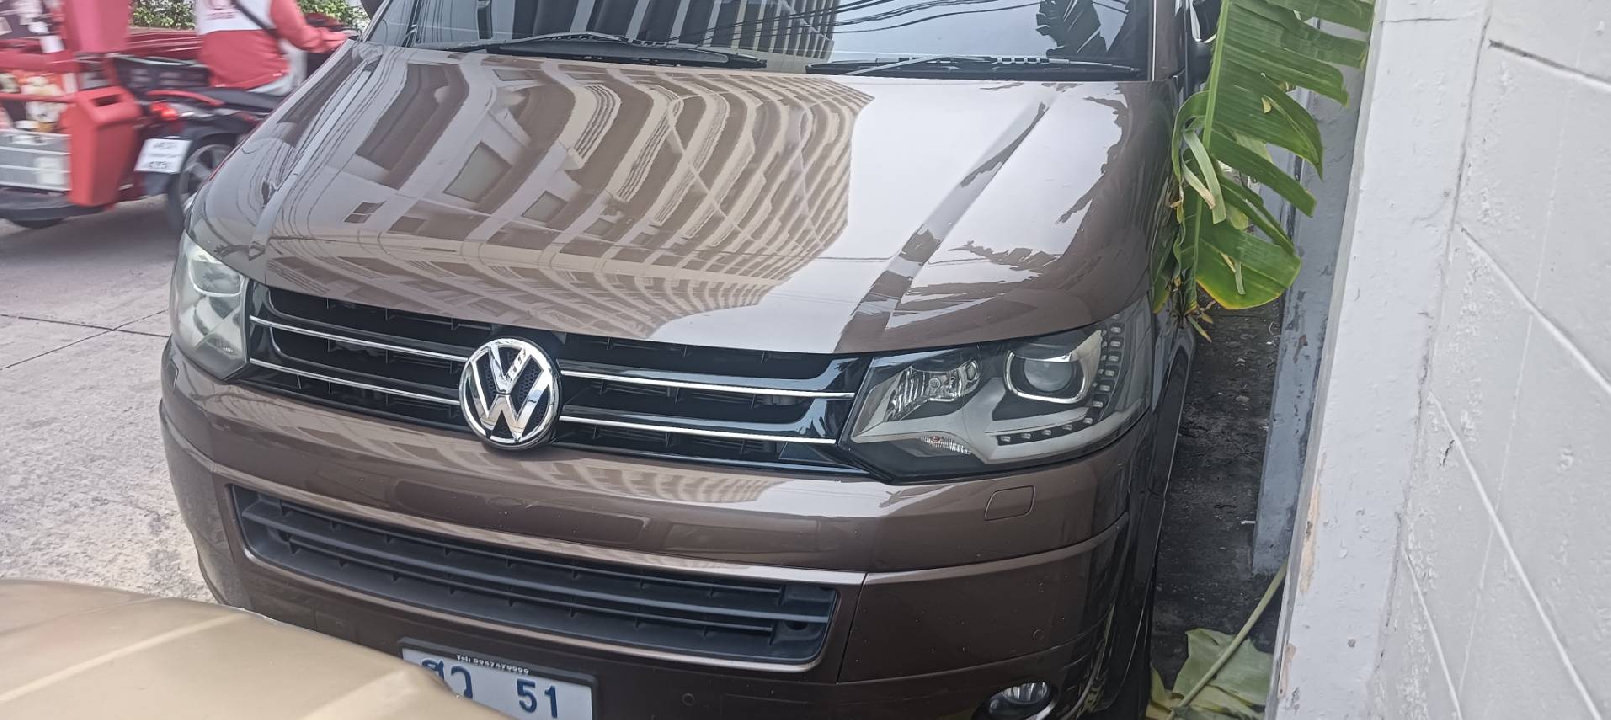 Volkswagen Caravelle 2014